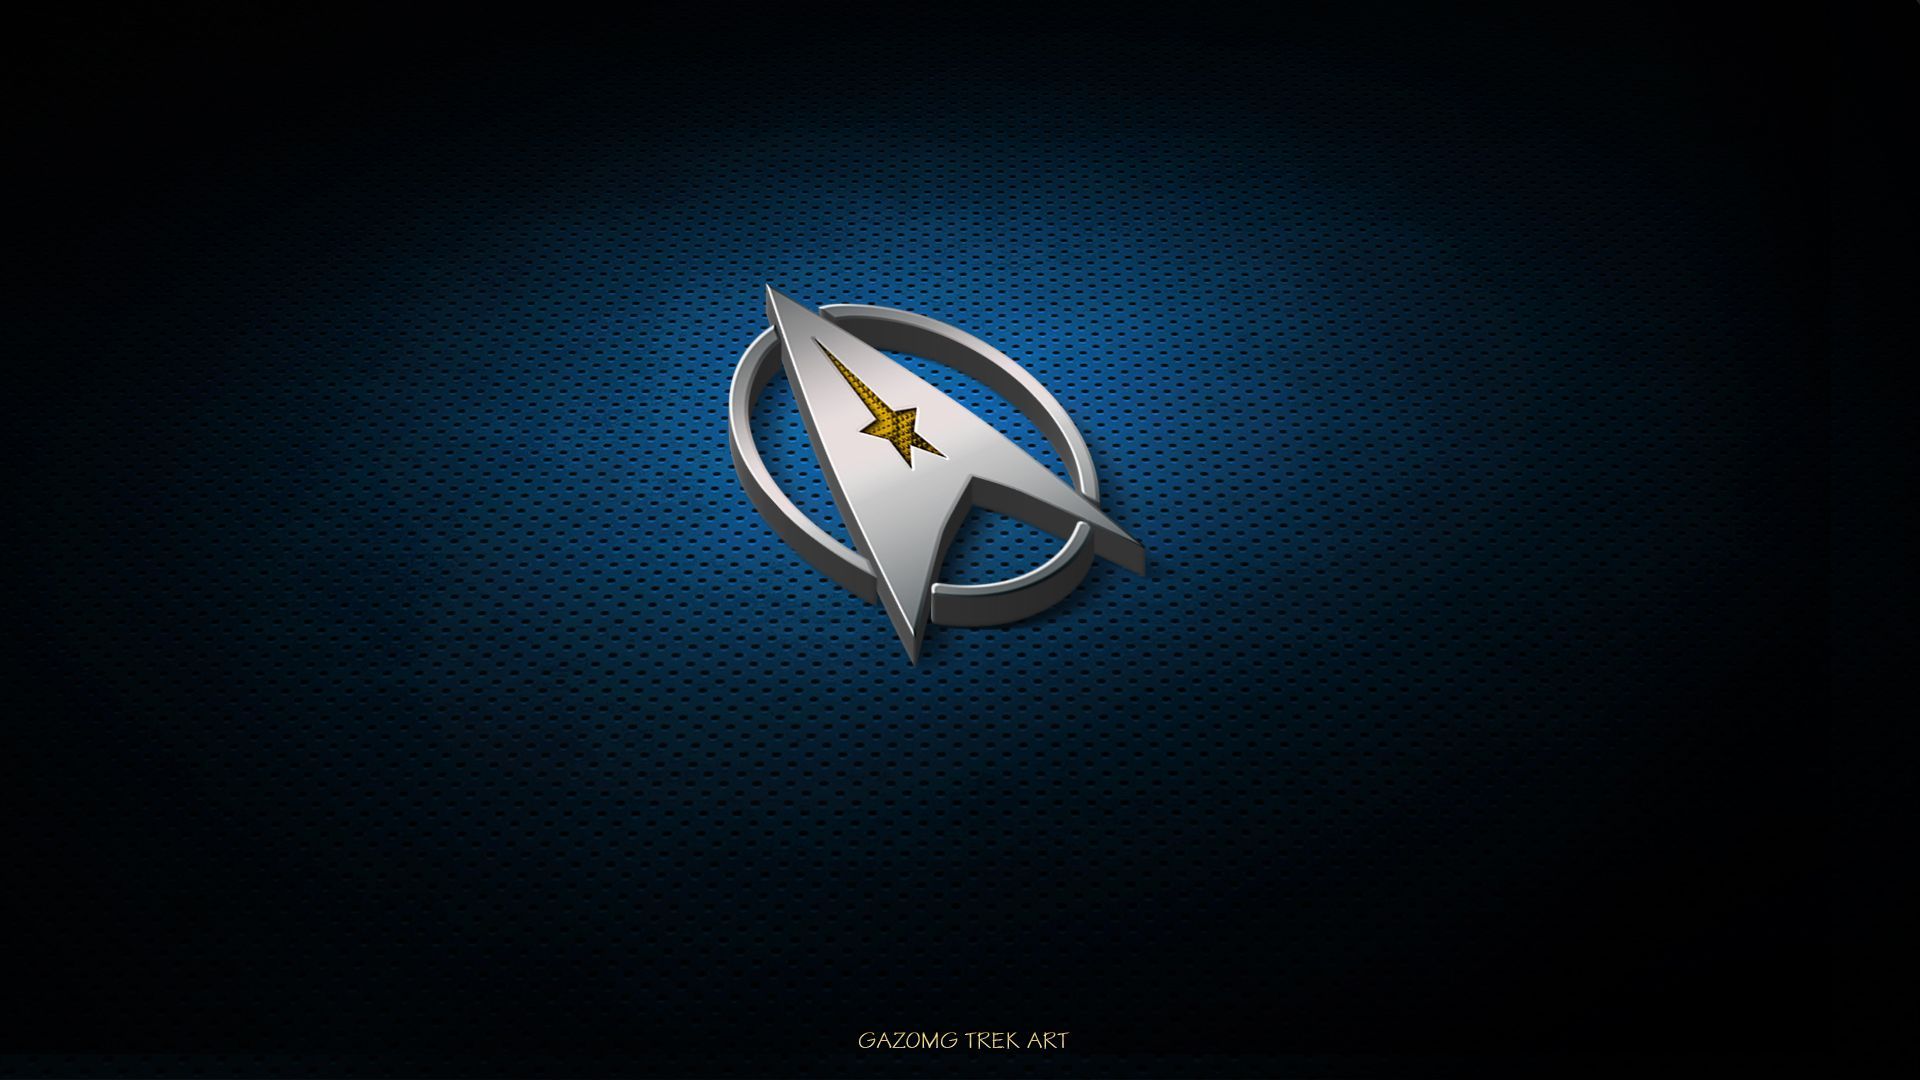 Logo Star Trek Background for Desk. Star trek wallpaper, Star trek logo, Star trek